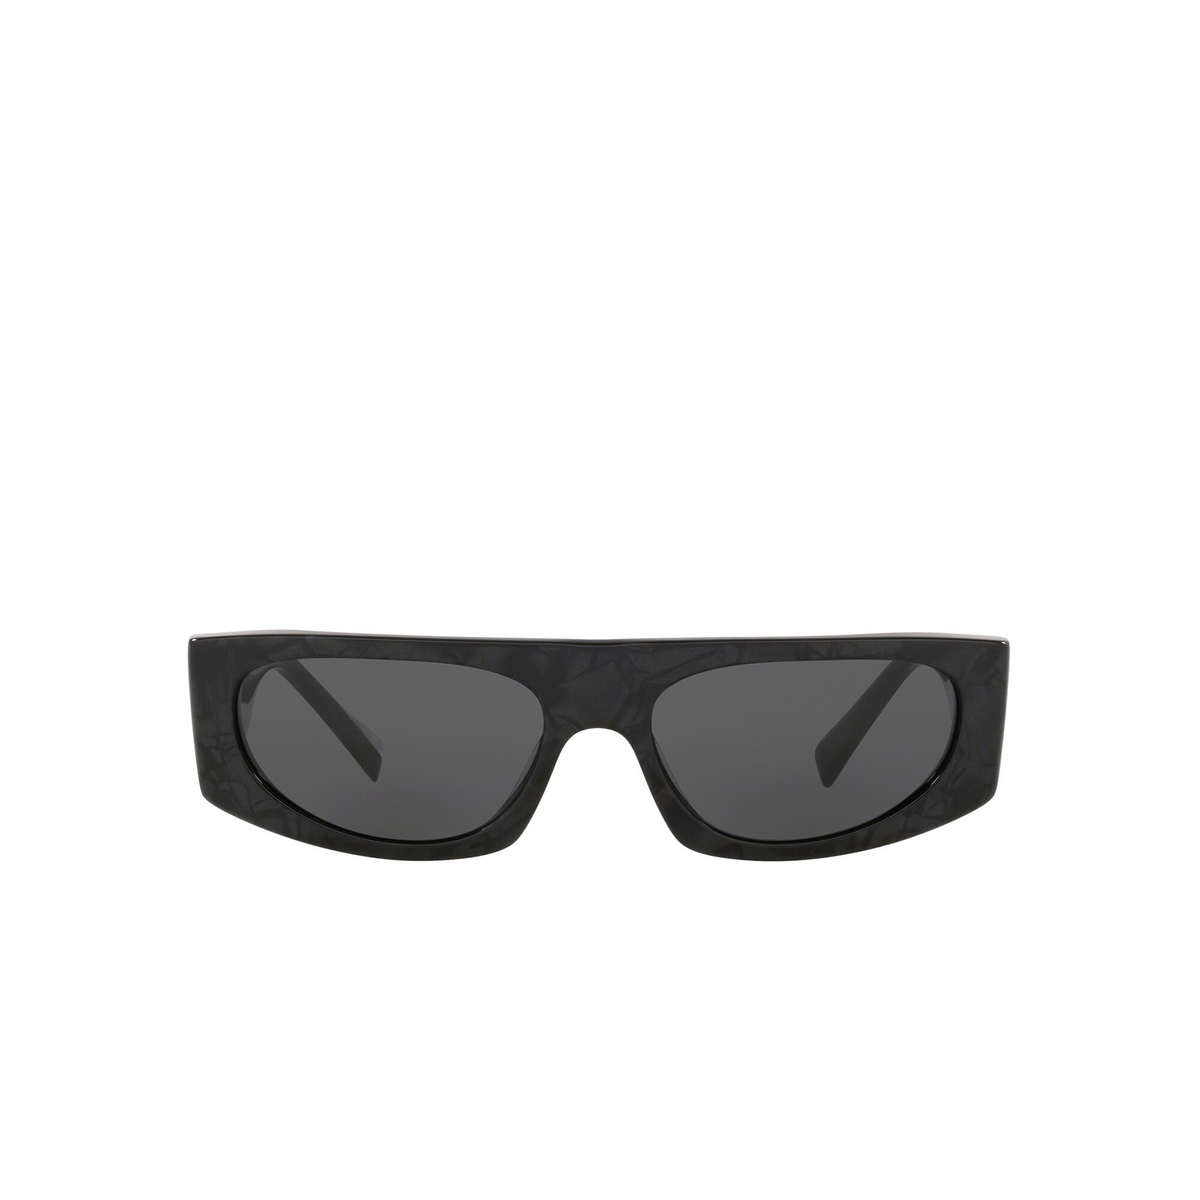 Alain Mikli® Rectangle Sunglasses: N°863 A05050 color Noir Mikli 001/87 - front view.